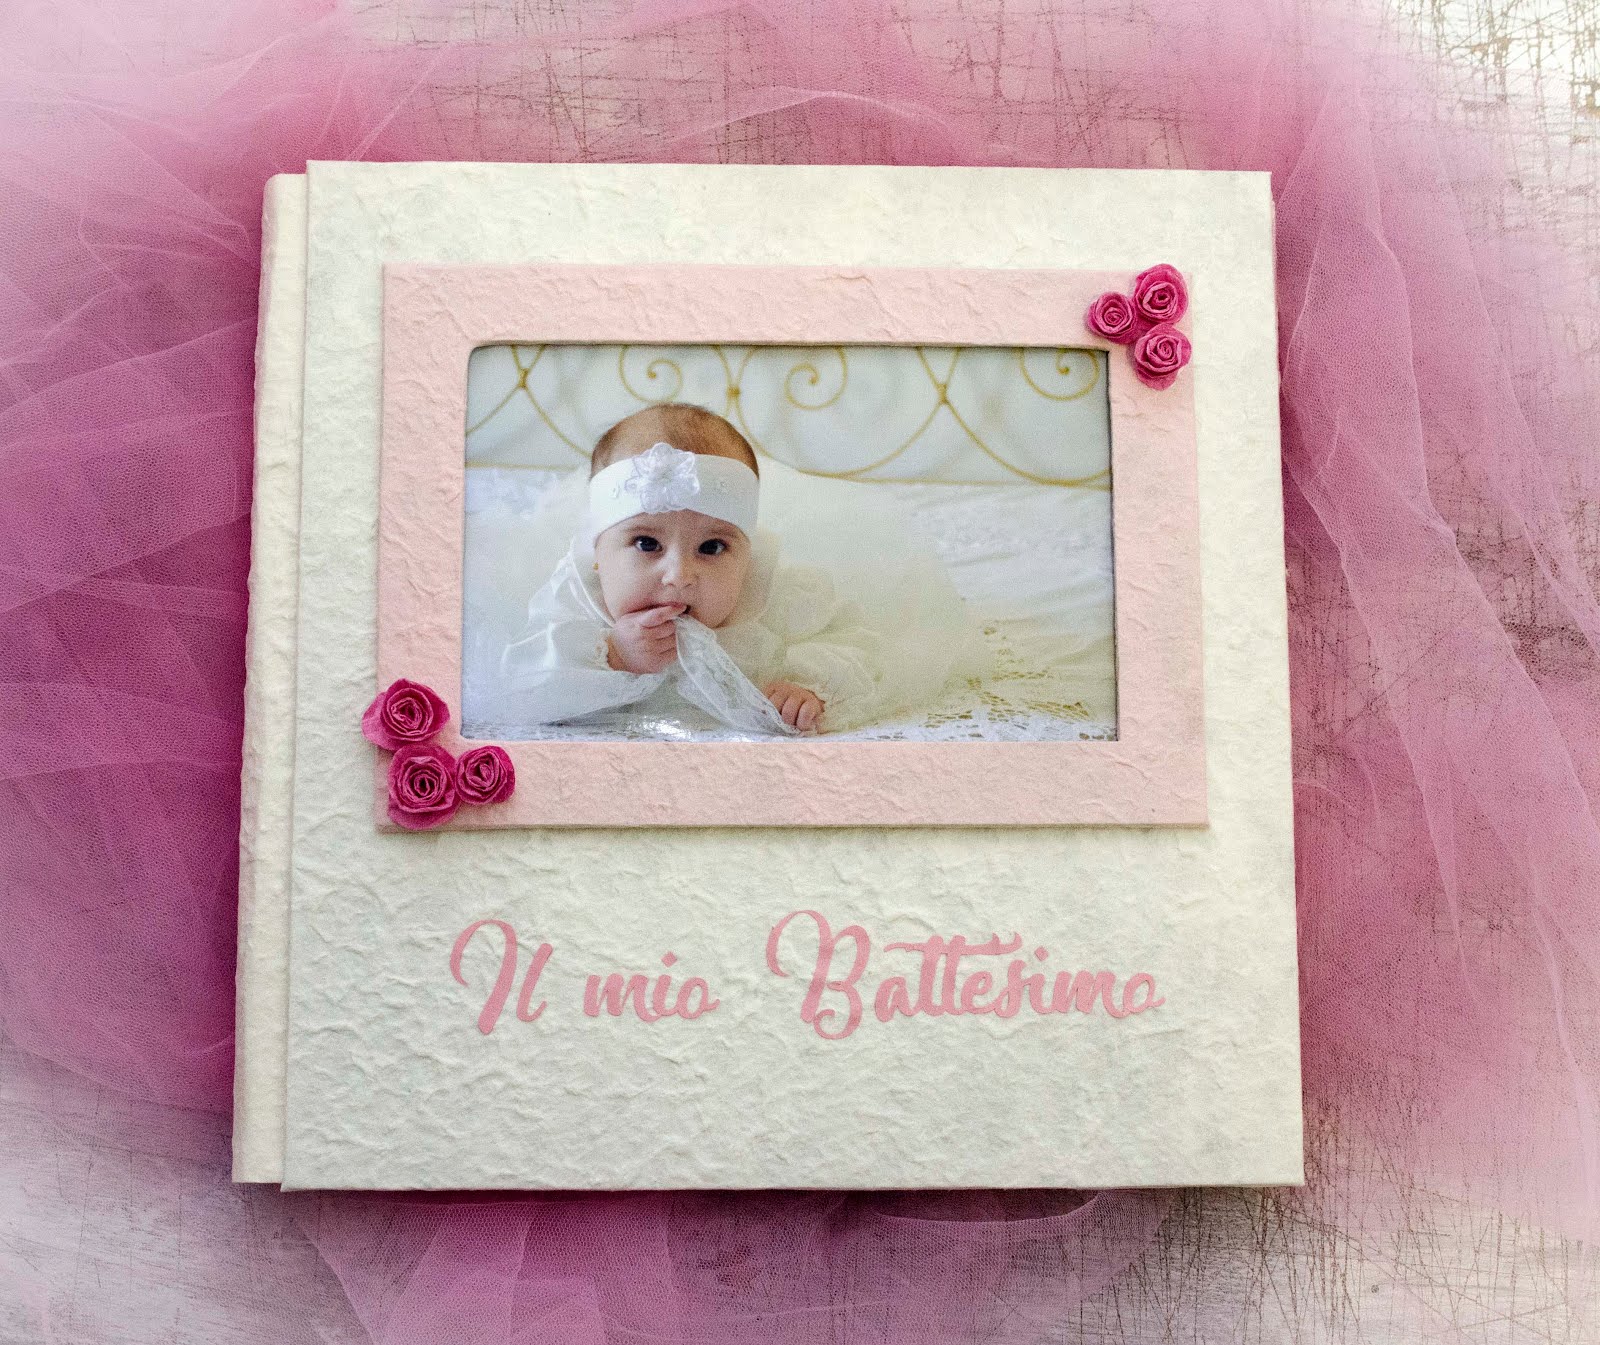 Vendita album fotografici - blog: Album Battesimo per Caterina